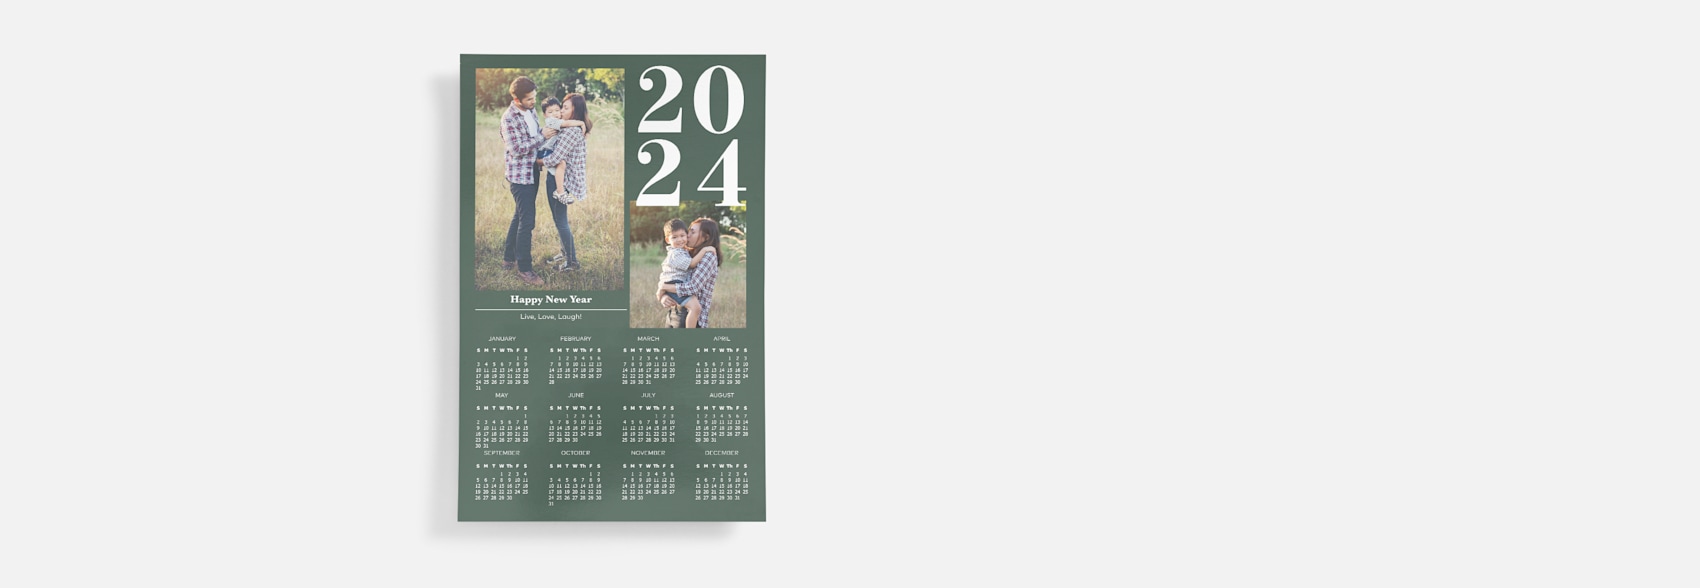 poster calendar with family photos